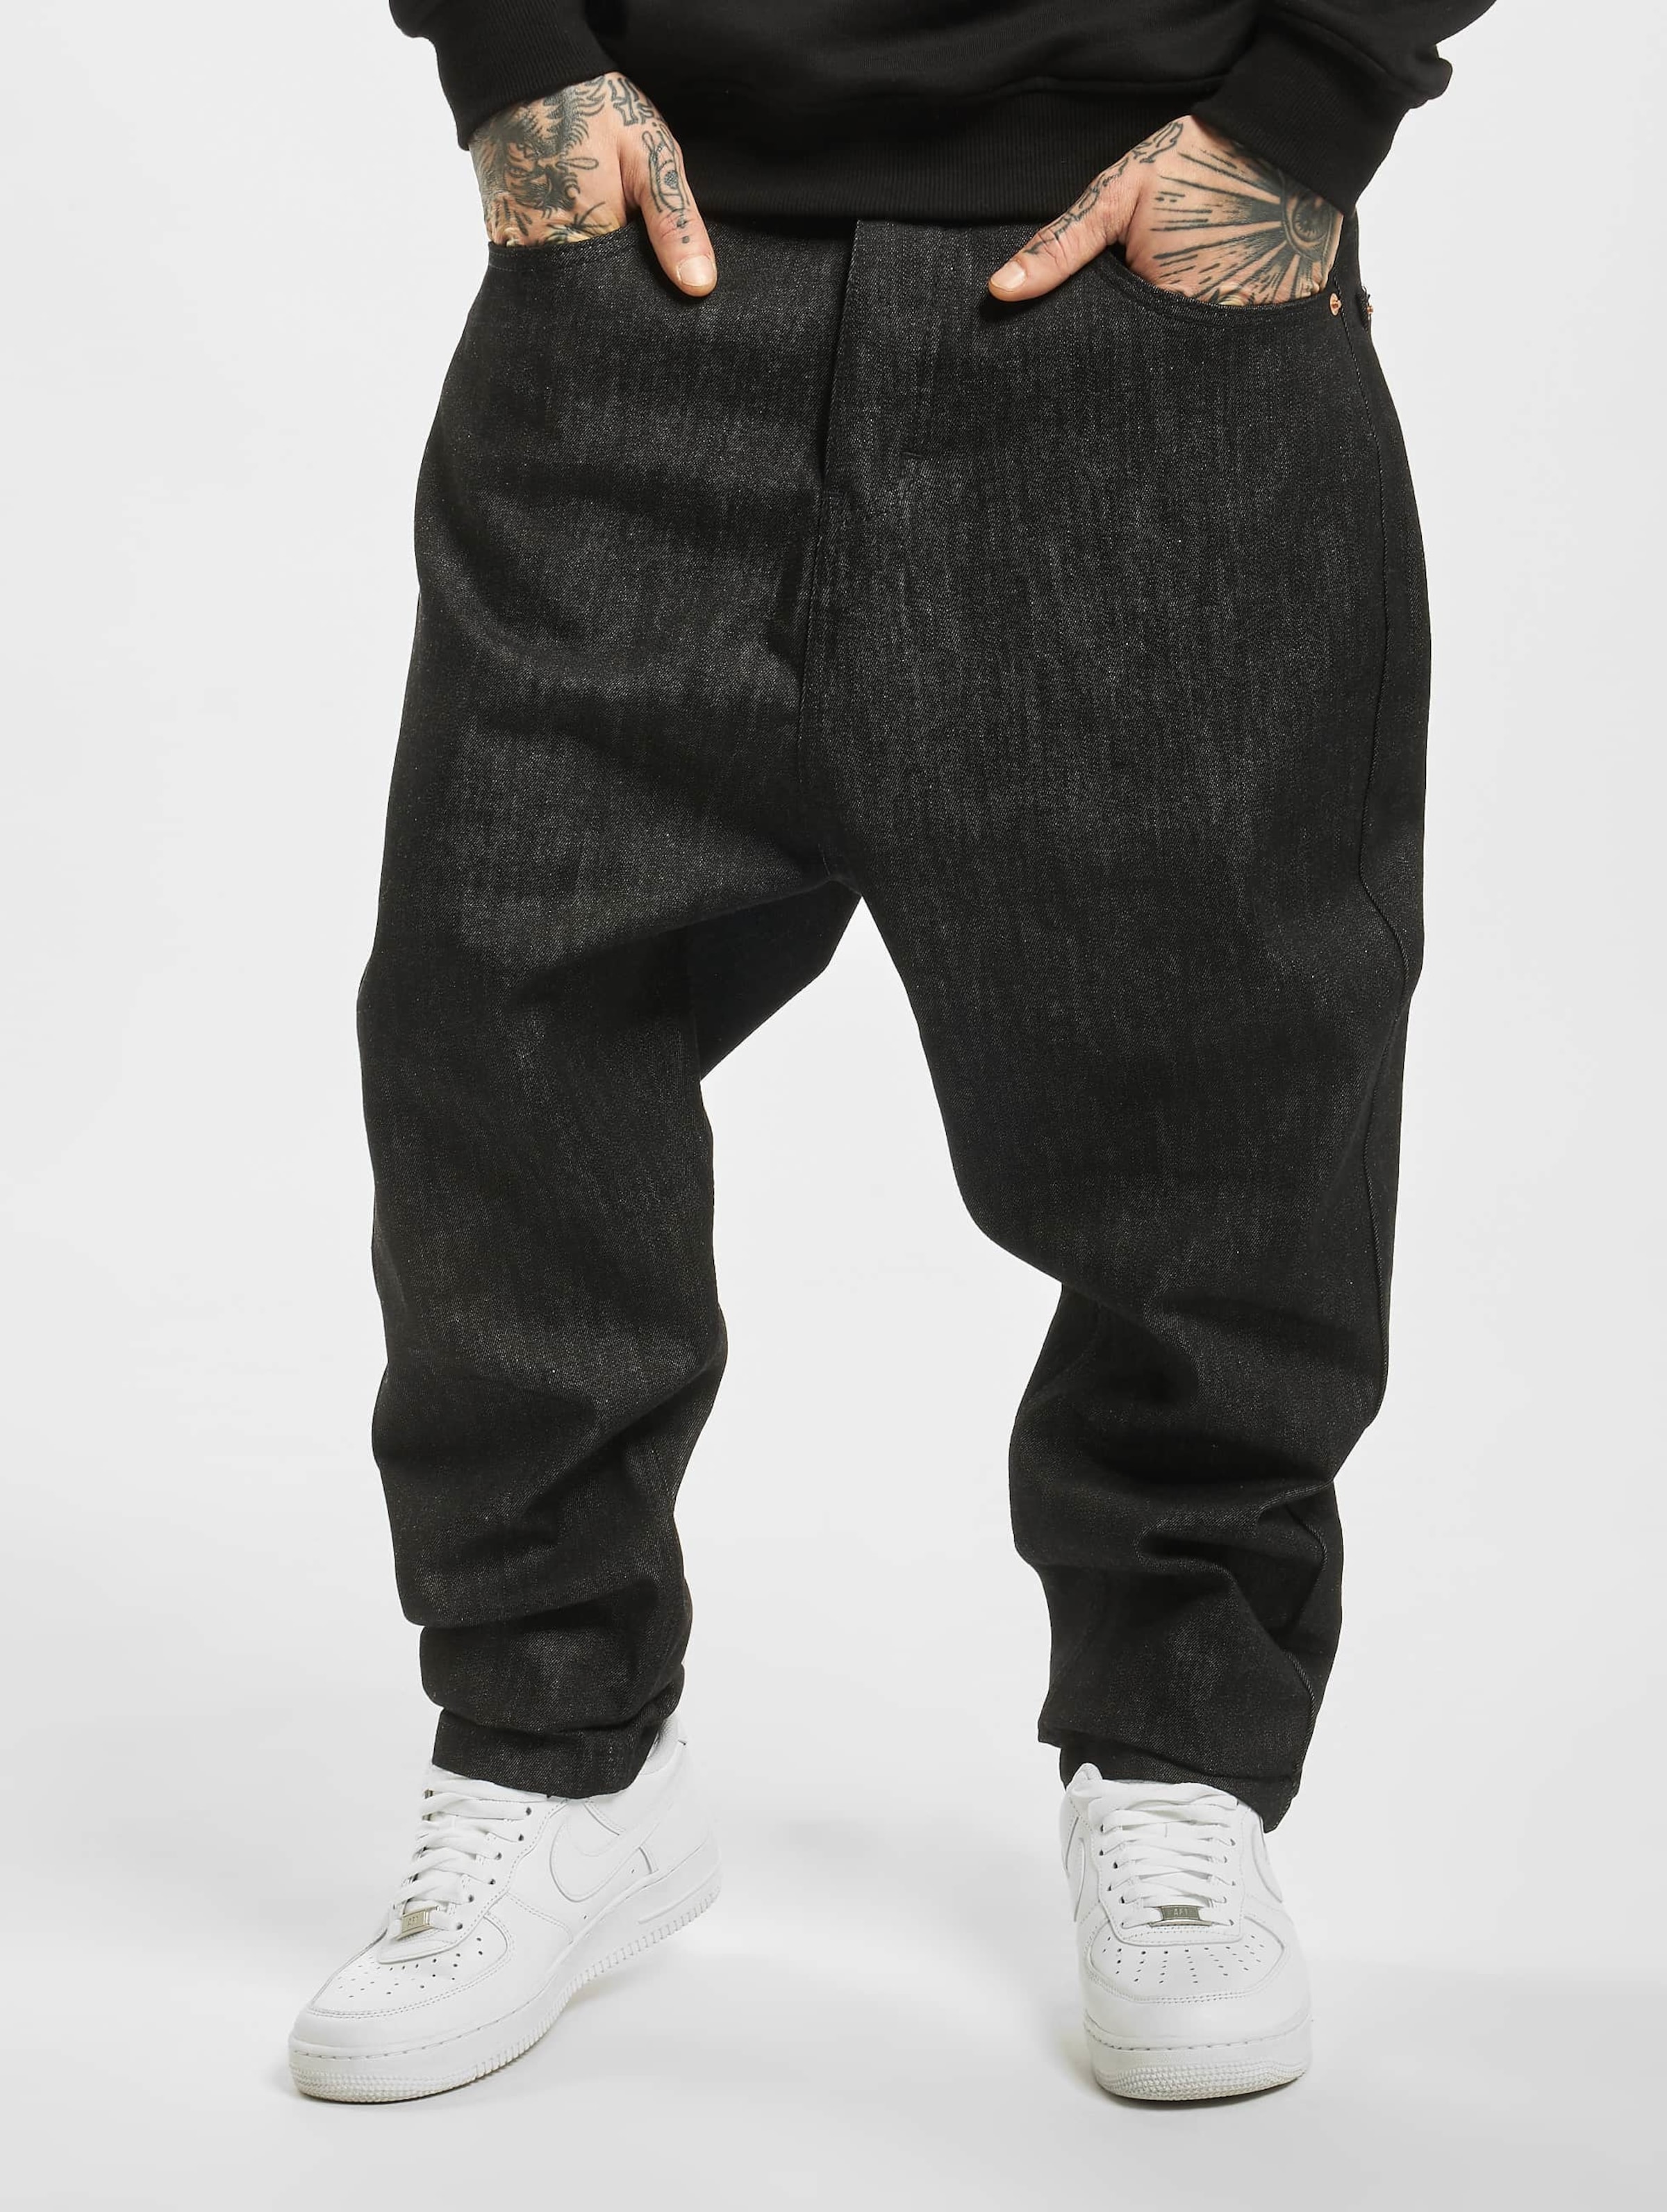 Rocawear - Hammer Fit Jeans Pants standard fit - 32/34 inch - Zwart